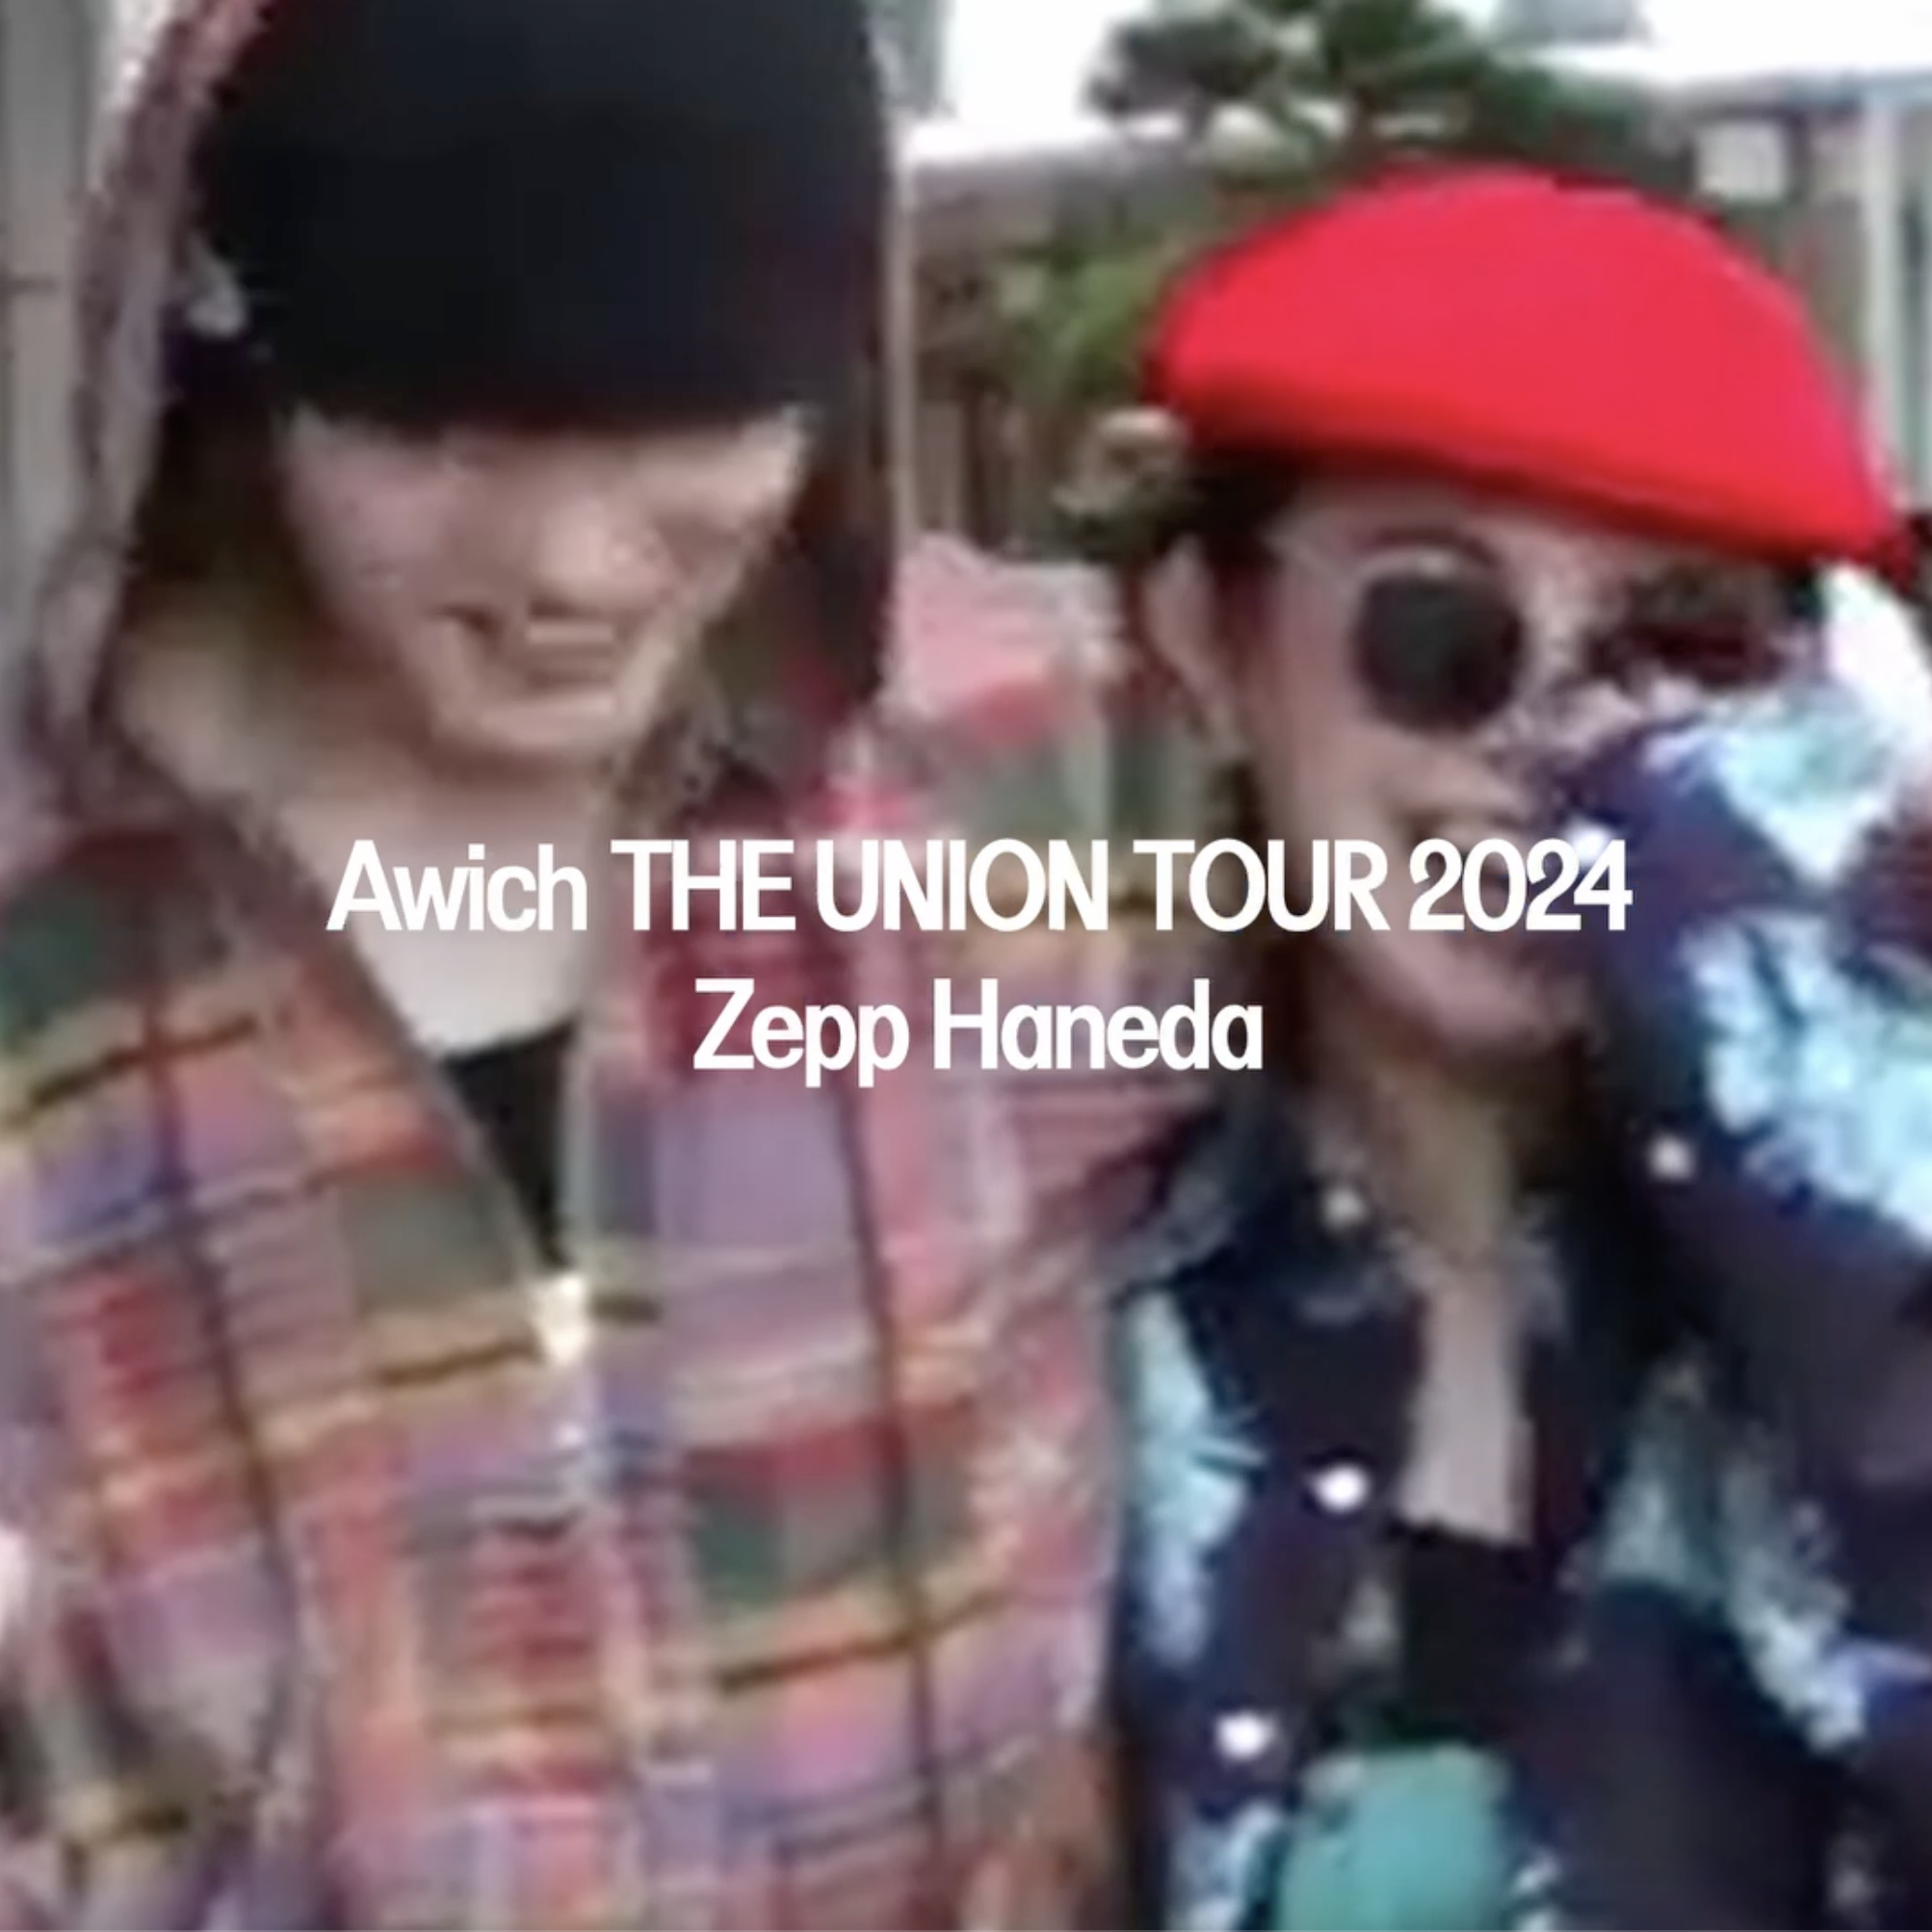 Awich全国ツアー「THE UNION TOUR 2024」のファッショナブルな”ウィッチル”をキャッチしたムービーを公開♡